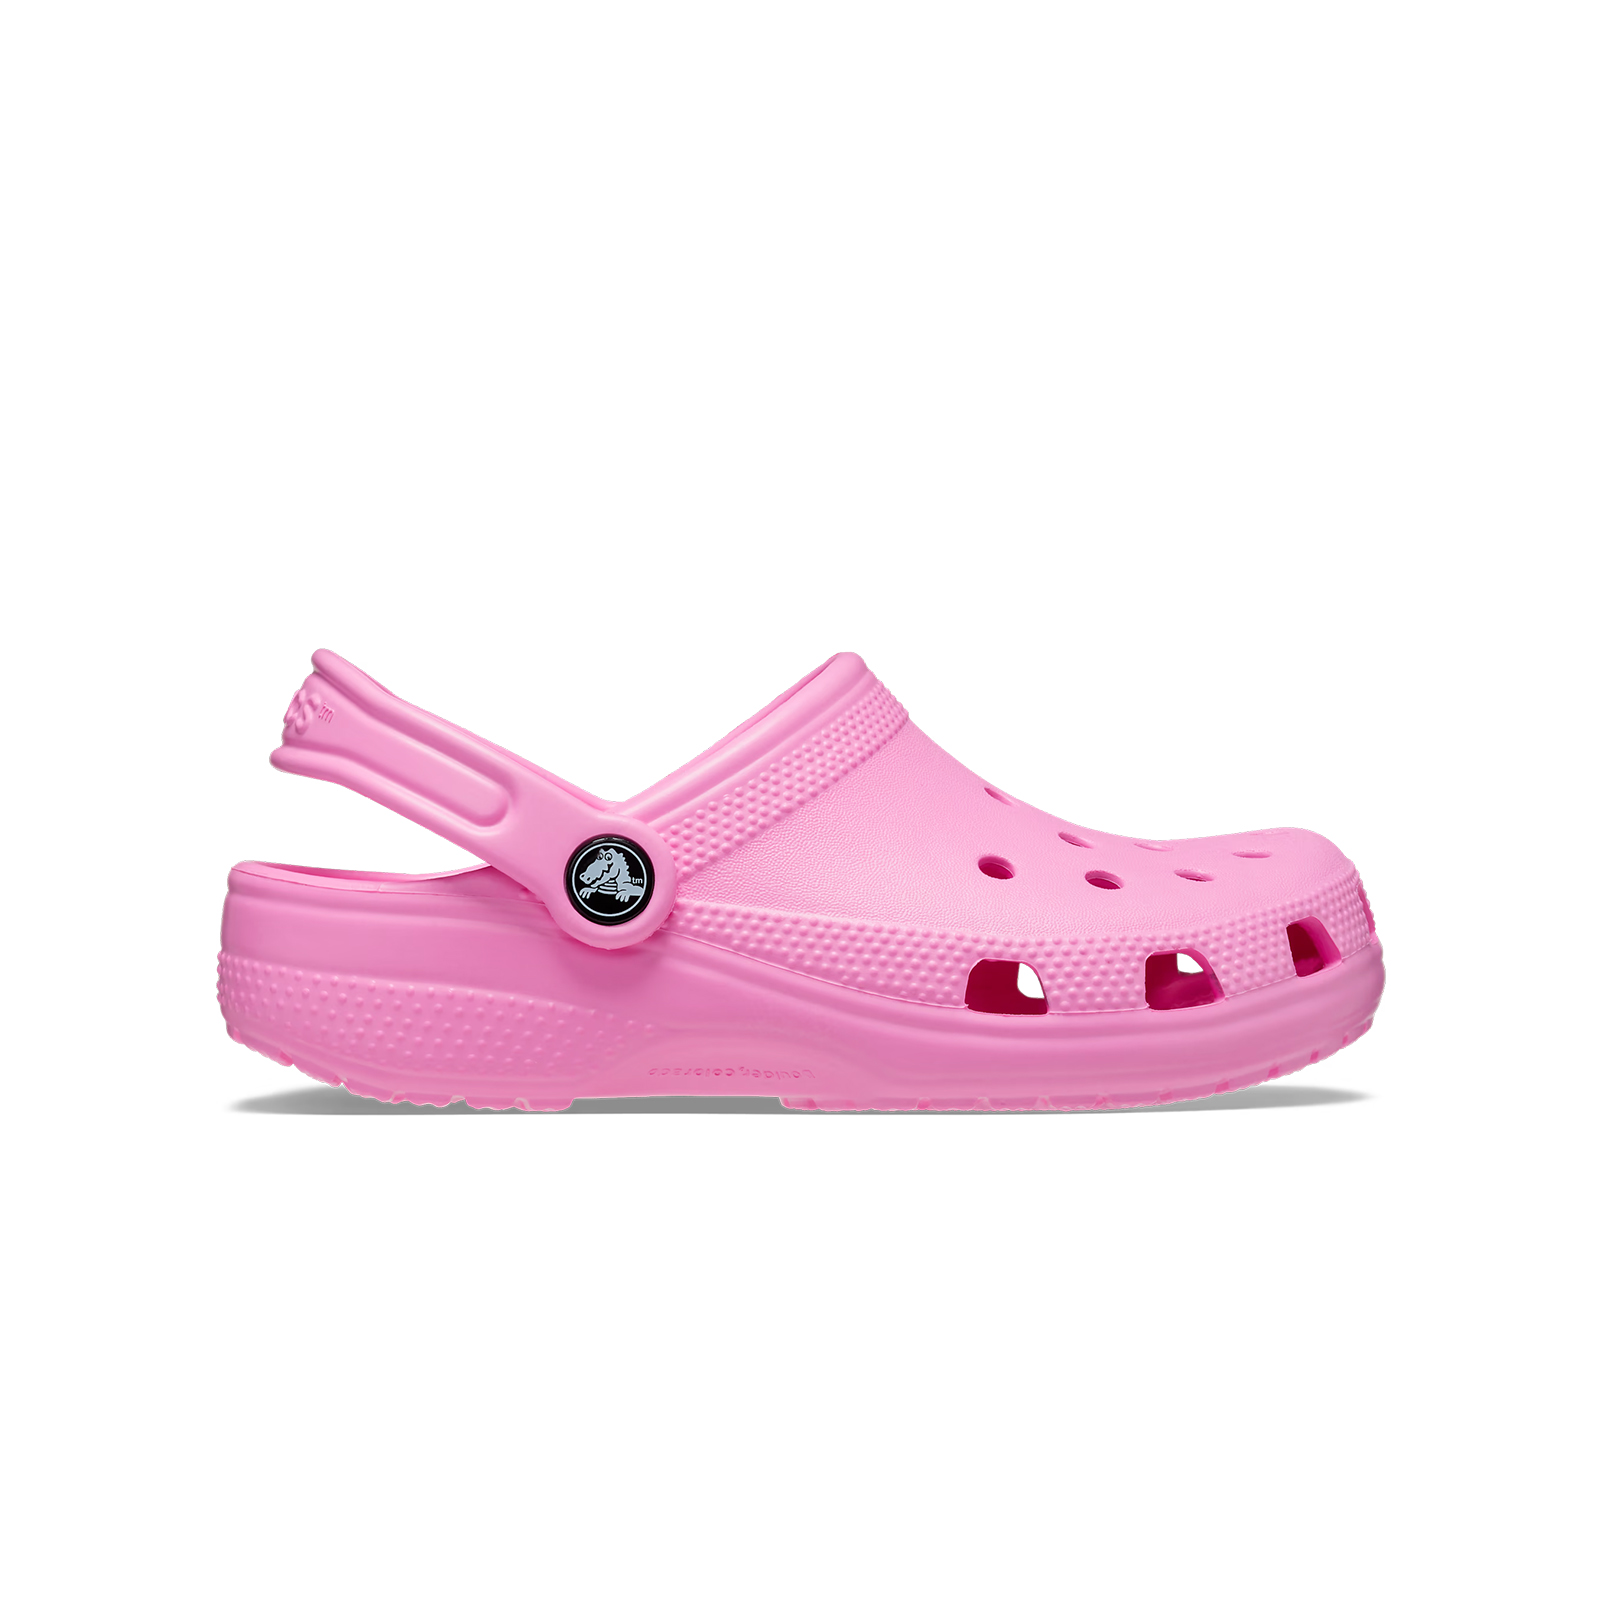 Παιδικά > Παπούτσια > Clogs > Glogs Crocs - CLASSIC CLOG K - TAFFY PINK